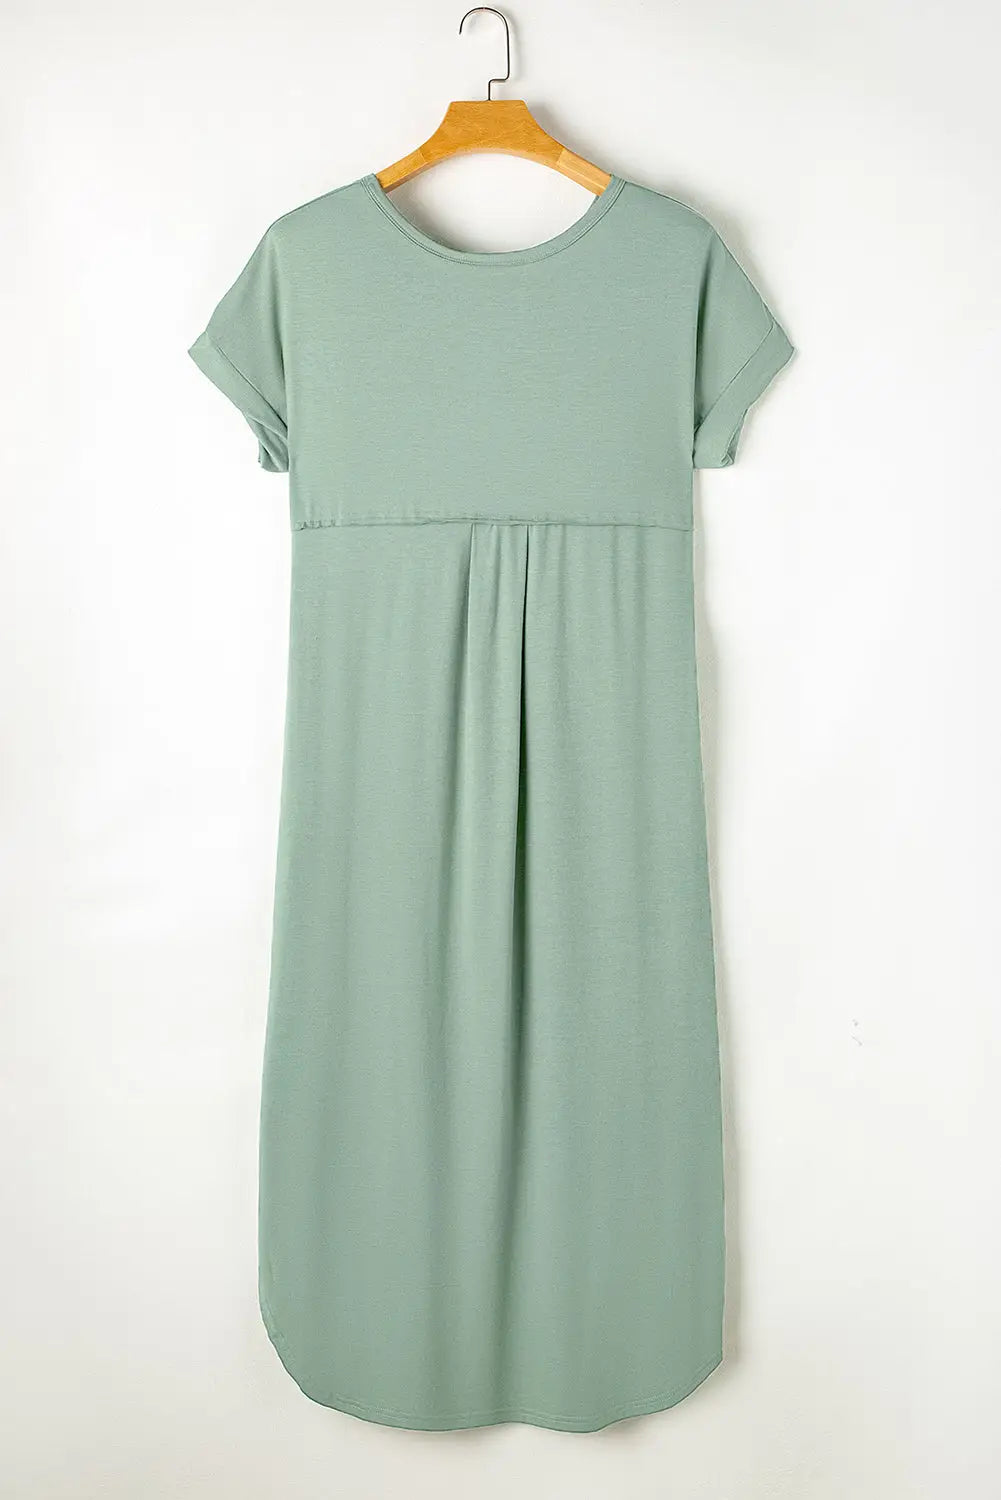 Grass green splits maxi t-shirt dress - t shirt dresses